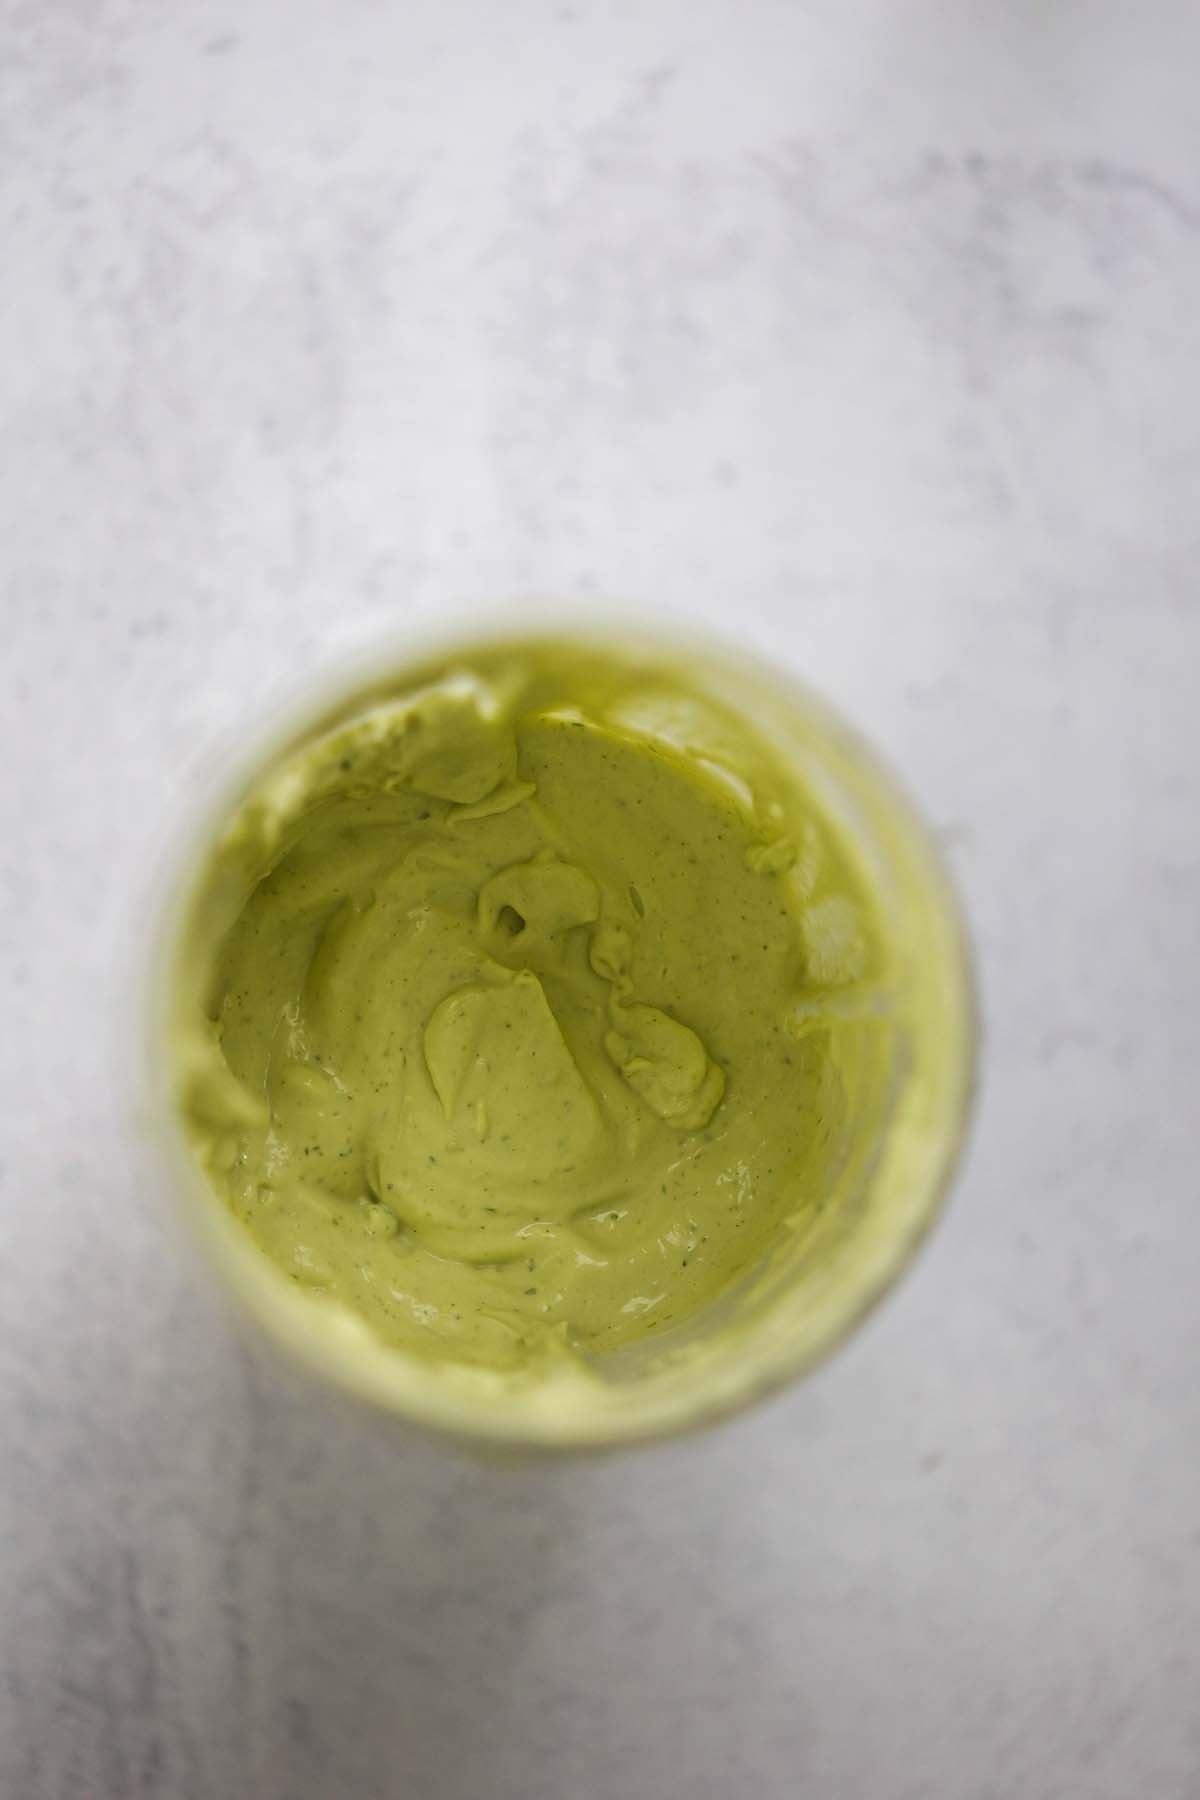 avocado crema in a blender. 